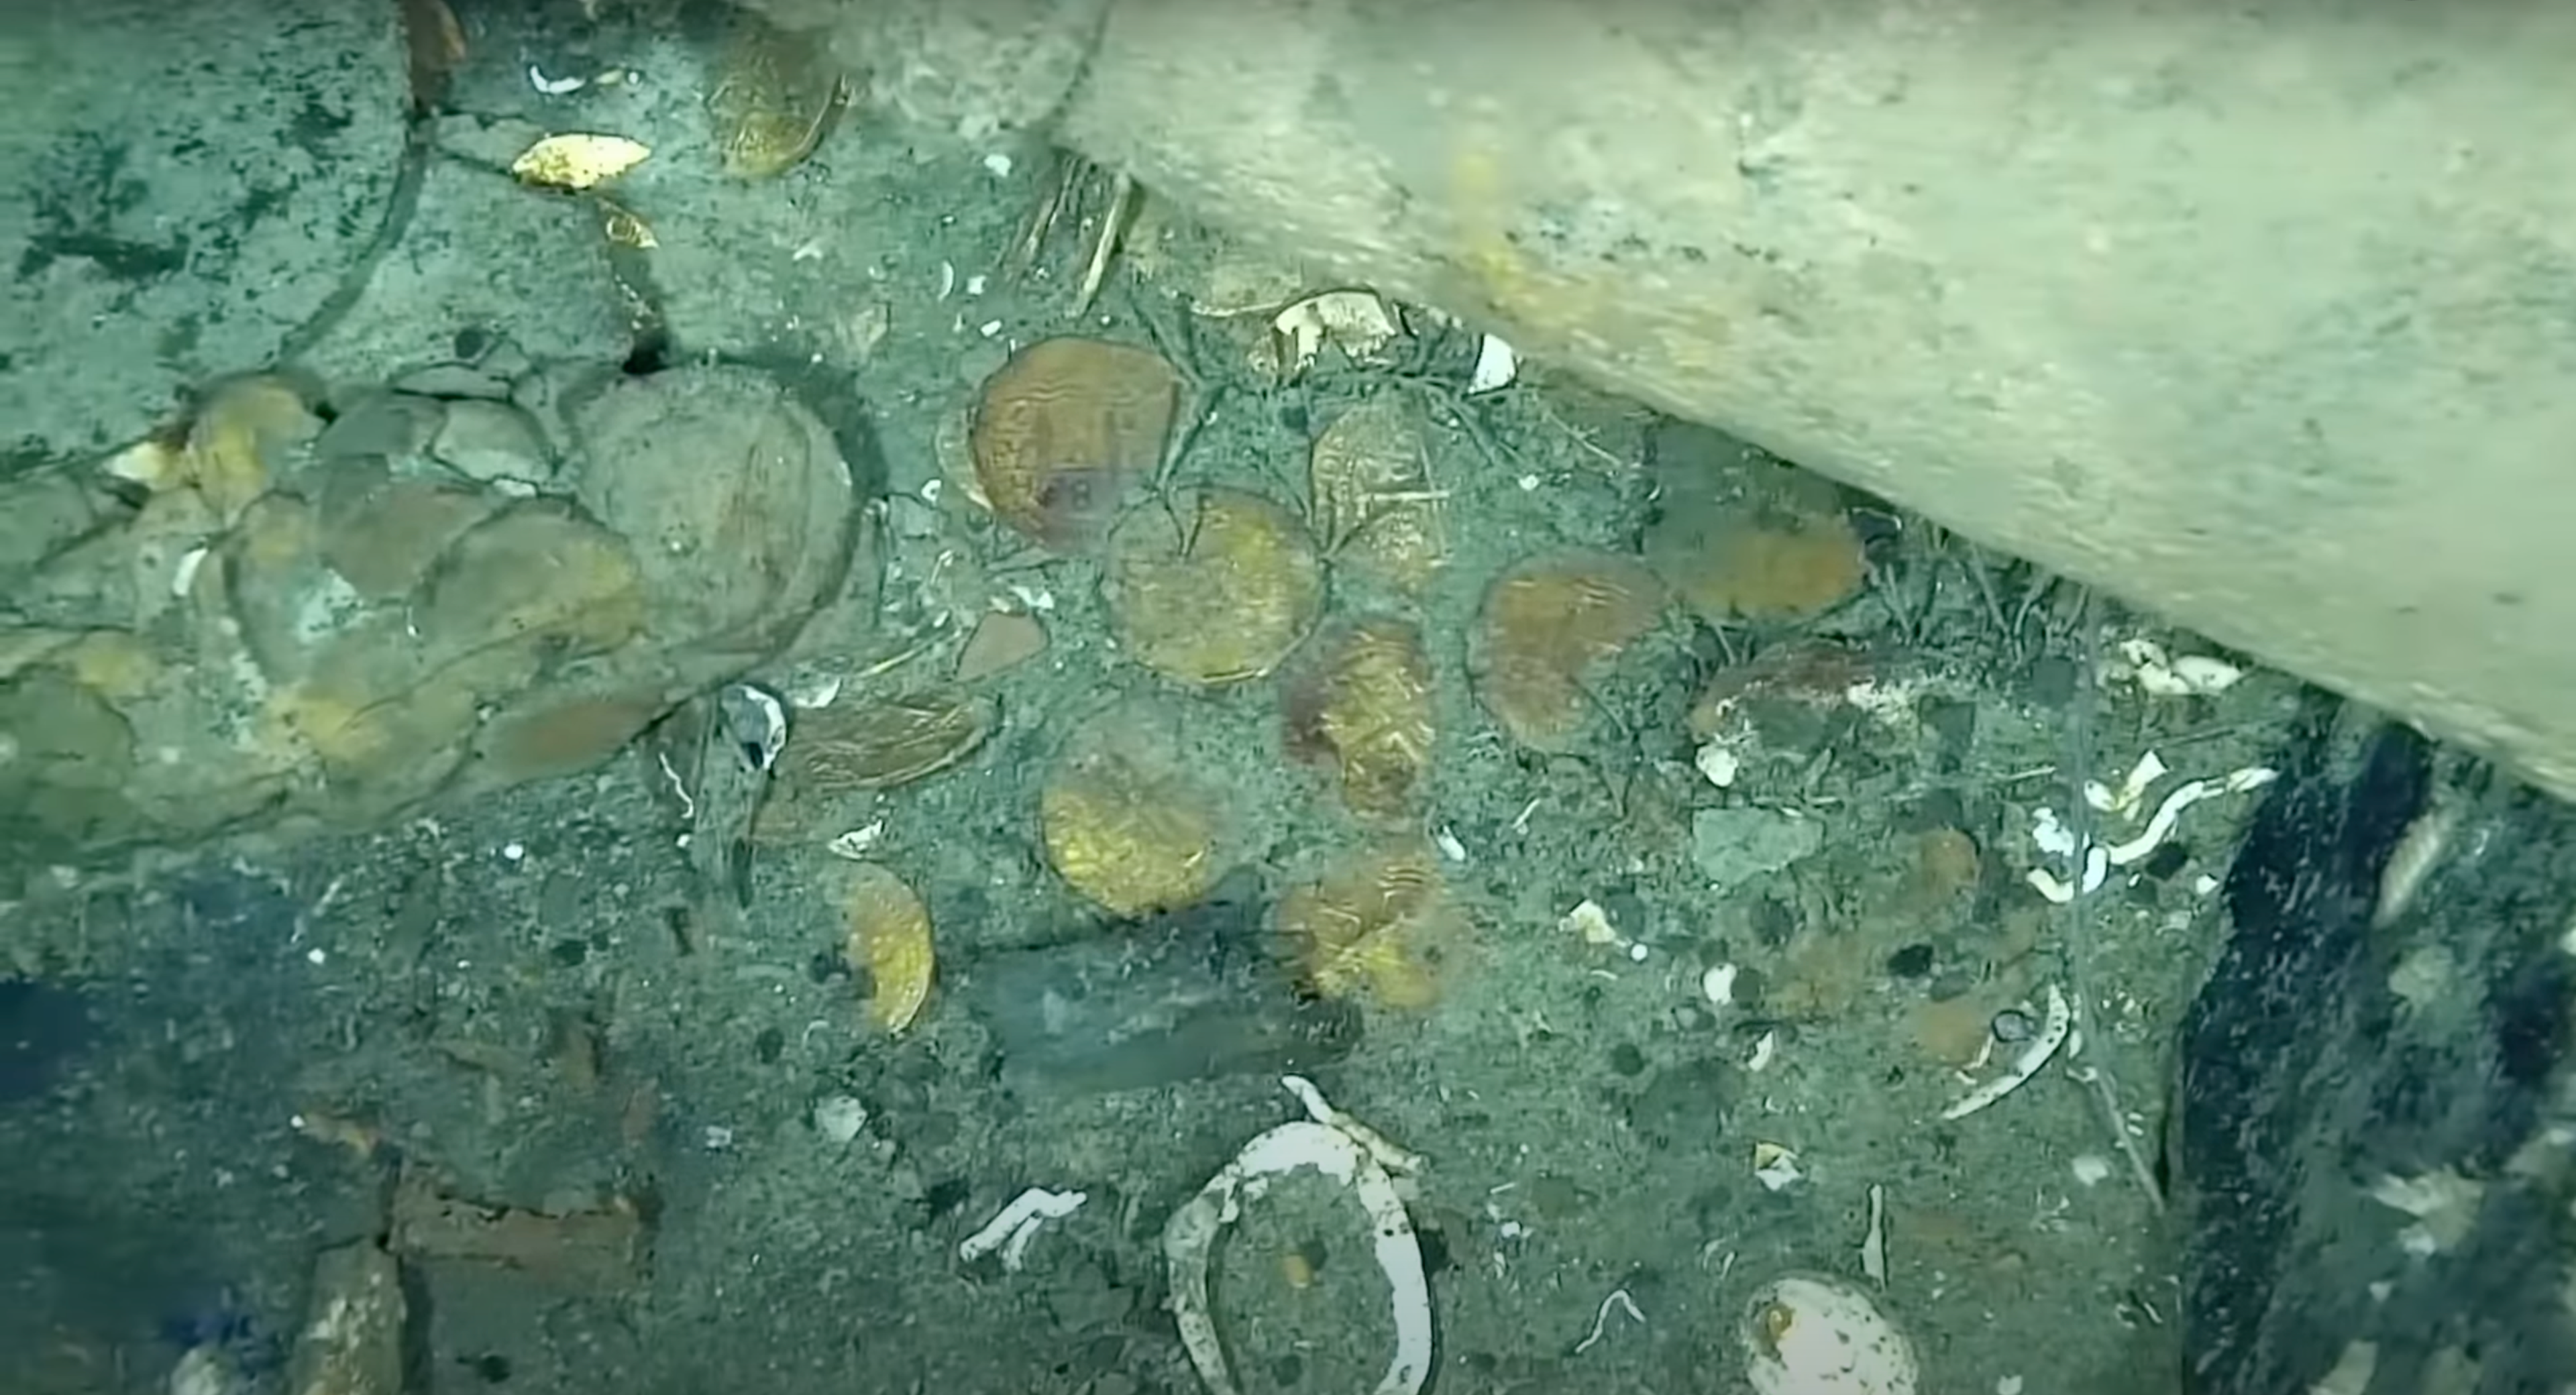 Monedas de oro halladas en el buque San José.